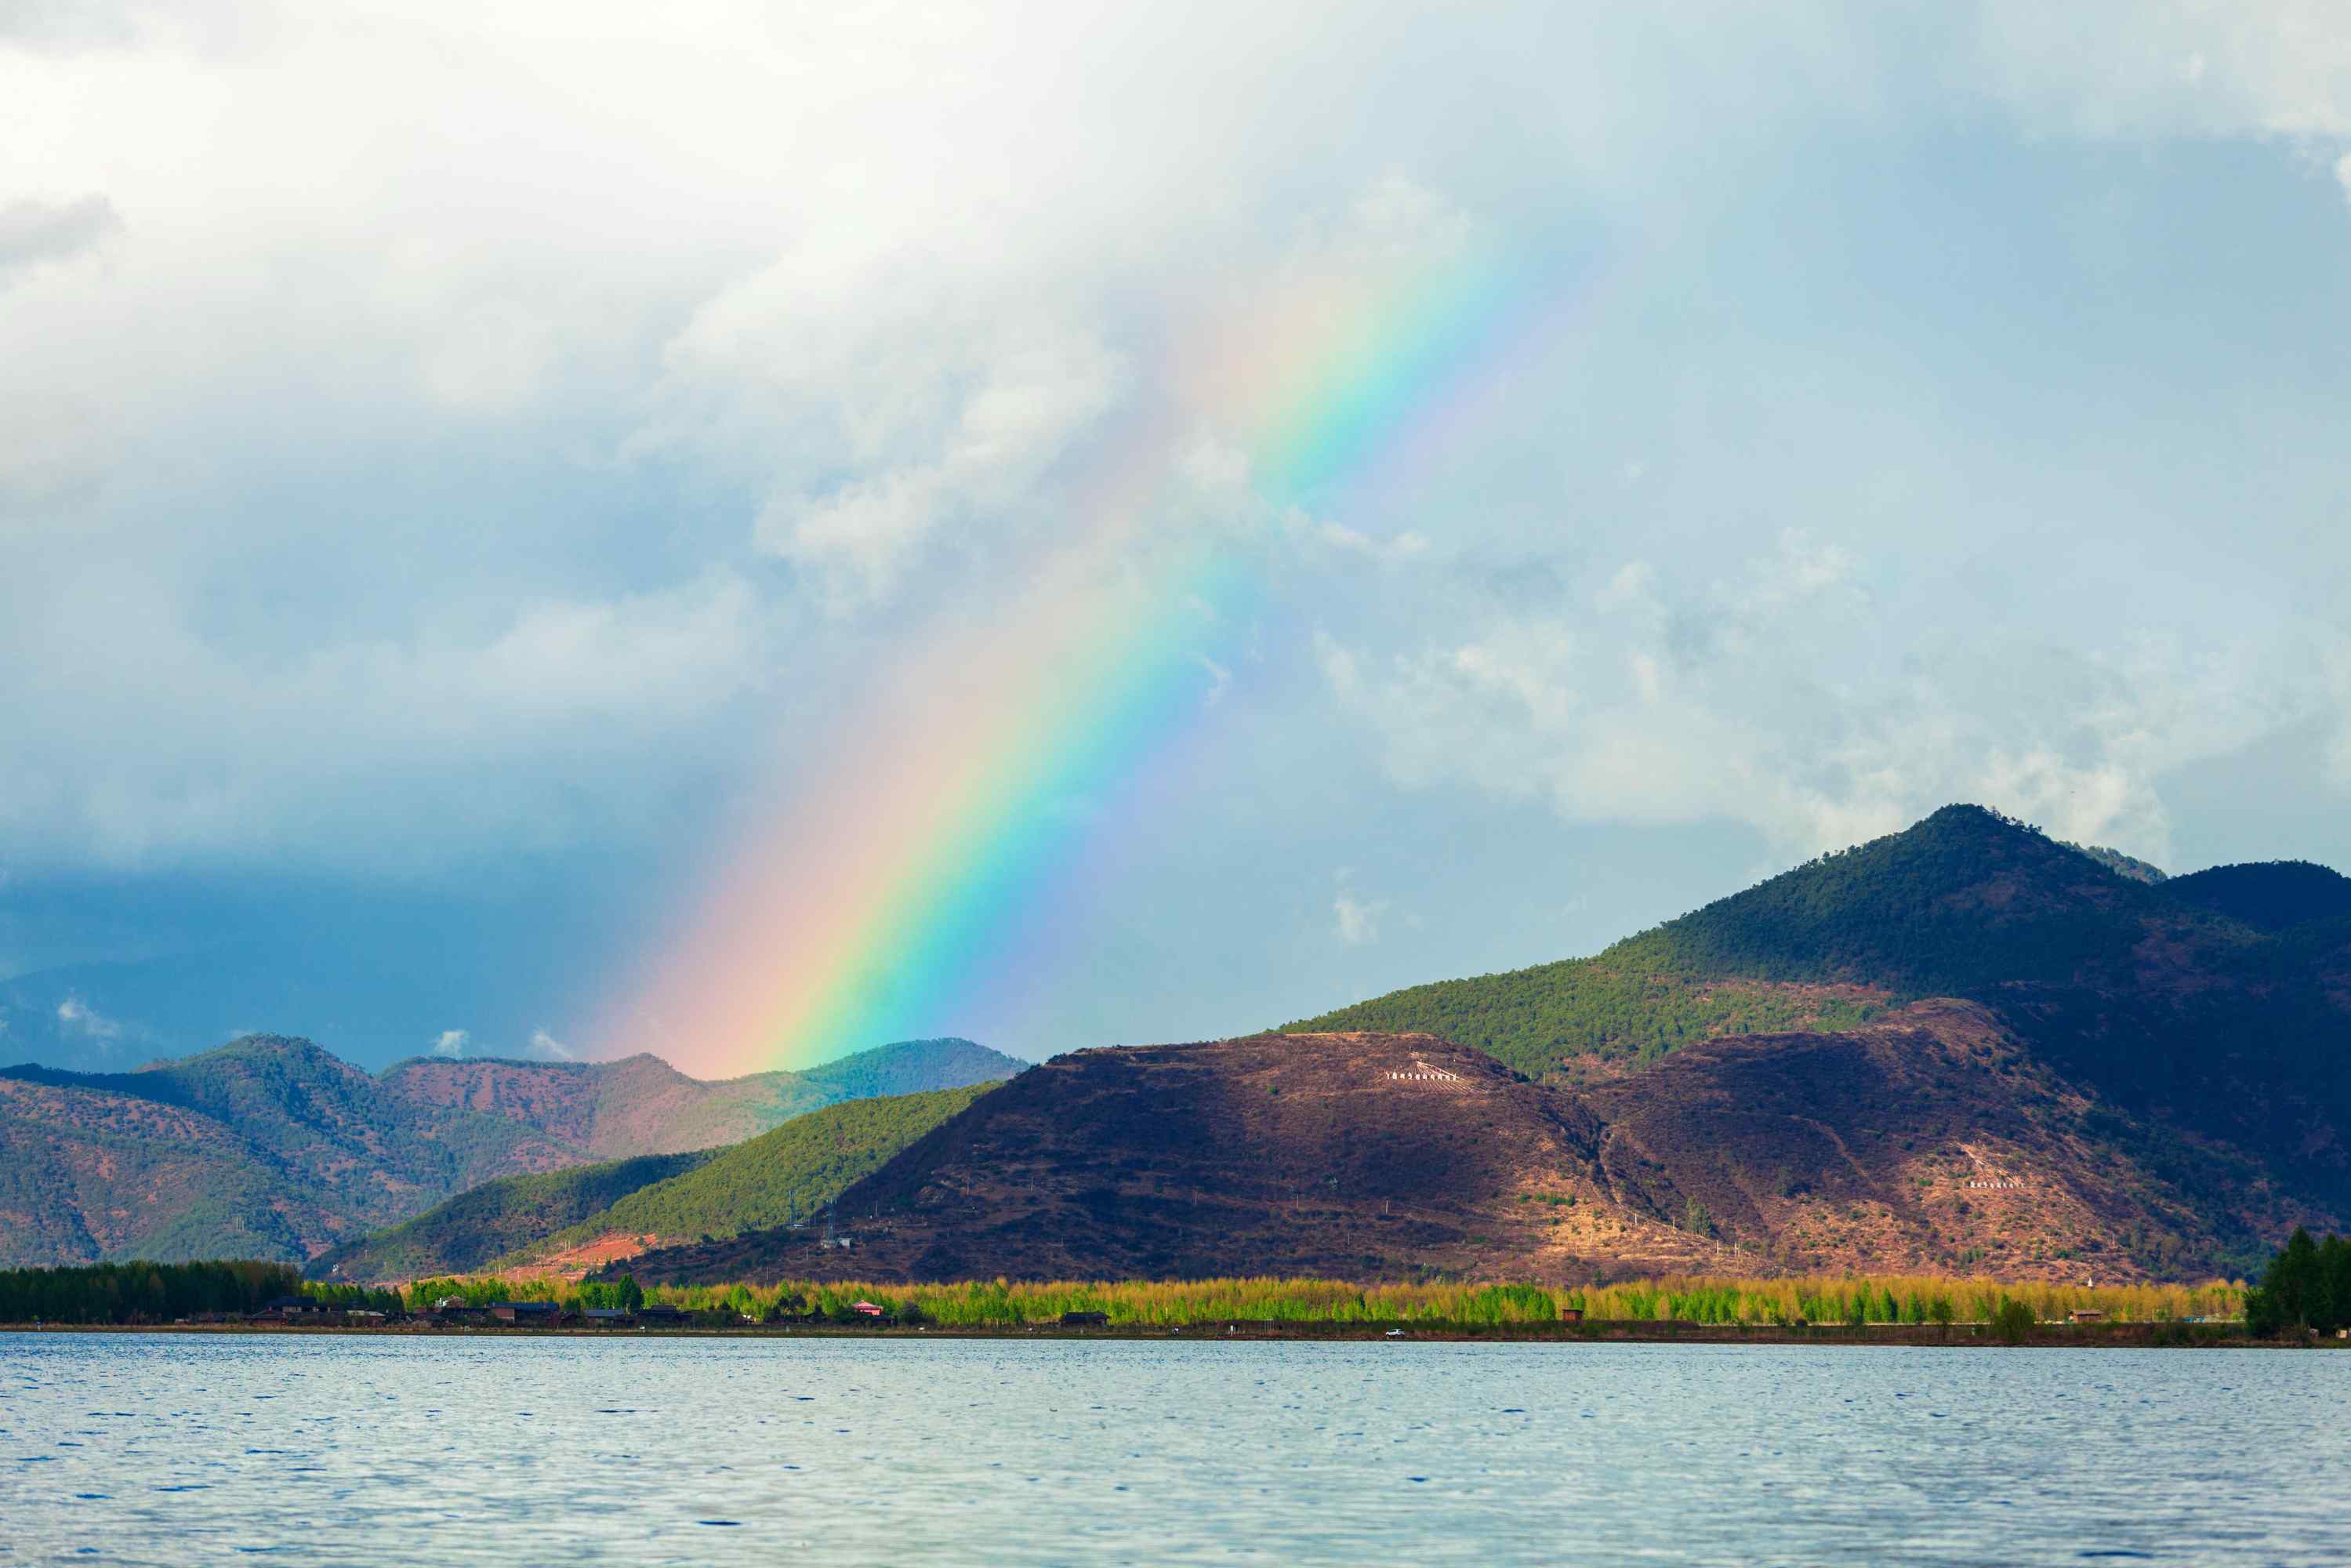 泸沽湖上的彩虹风景图片